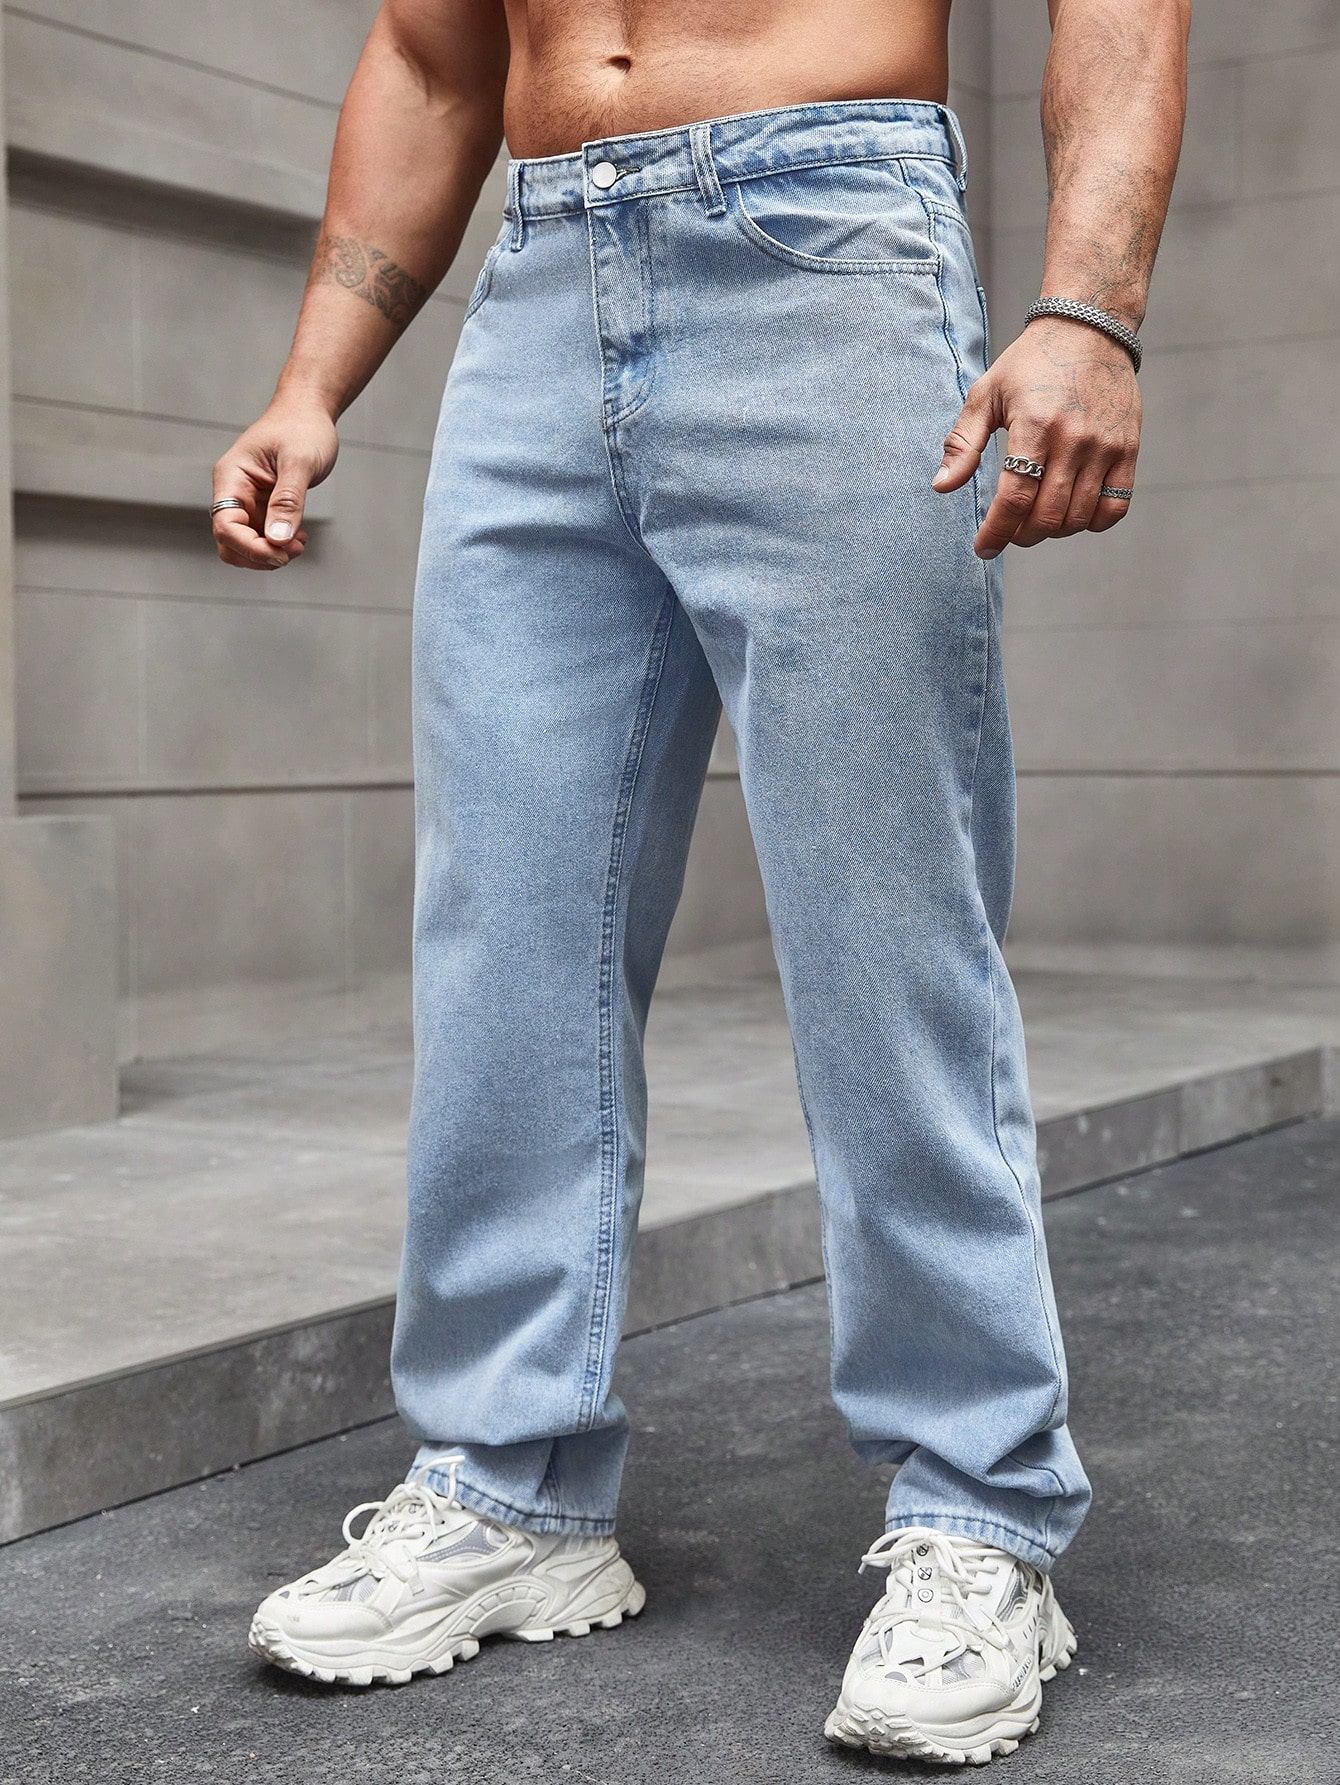 Мужские зауженные джинсы Manfinity Hypemode со скошенными карманами, потертые, синий 2022 джинсы для мужчин и женщин мужские винтажные джинсы с вышивкой джинсы мешковатые джинсы с карманами джинсы с пуговицами джинсовые брю